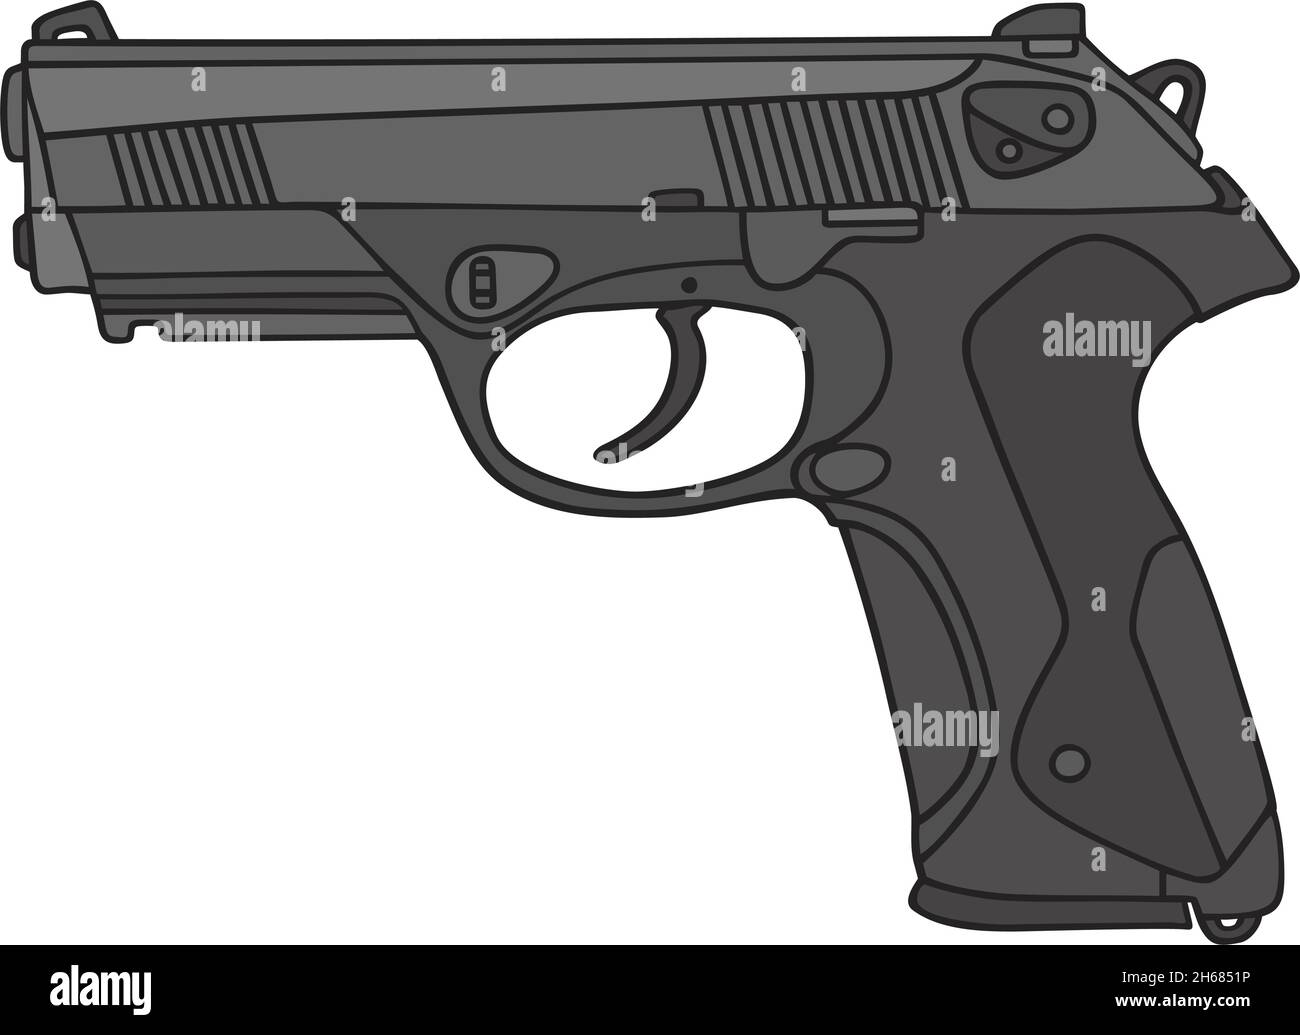 Il disegno a mano vettorizzato di una pistola recente Illustrazione Vettoriale